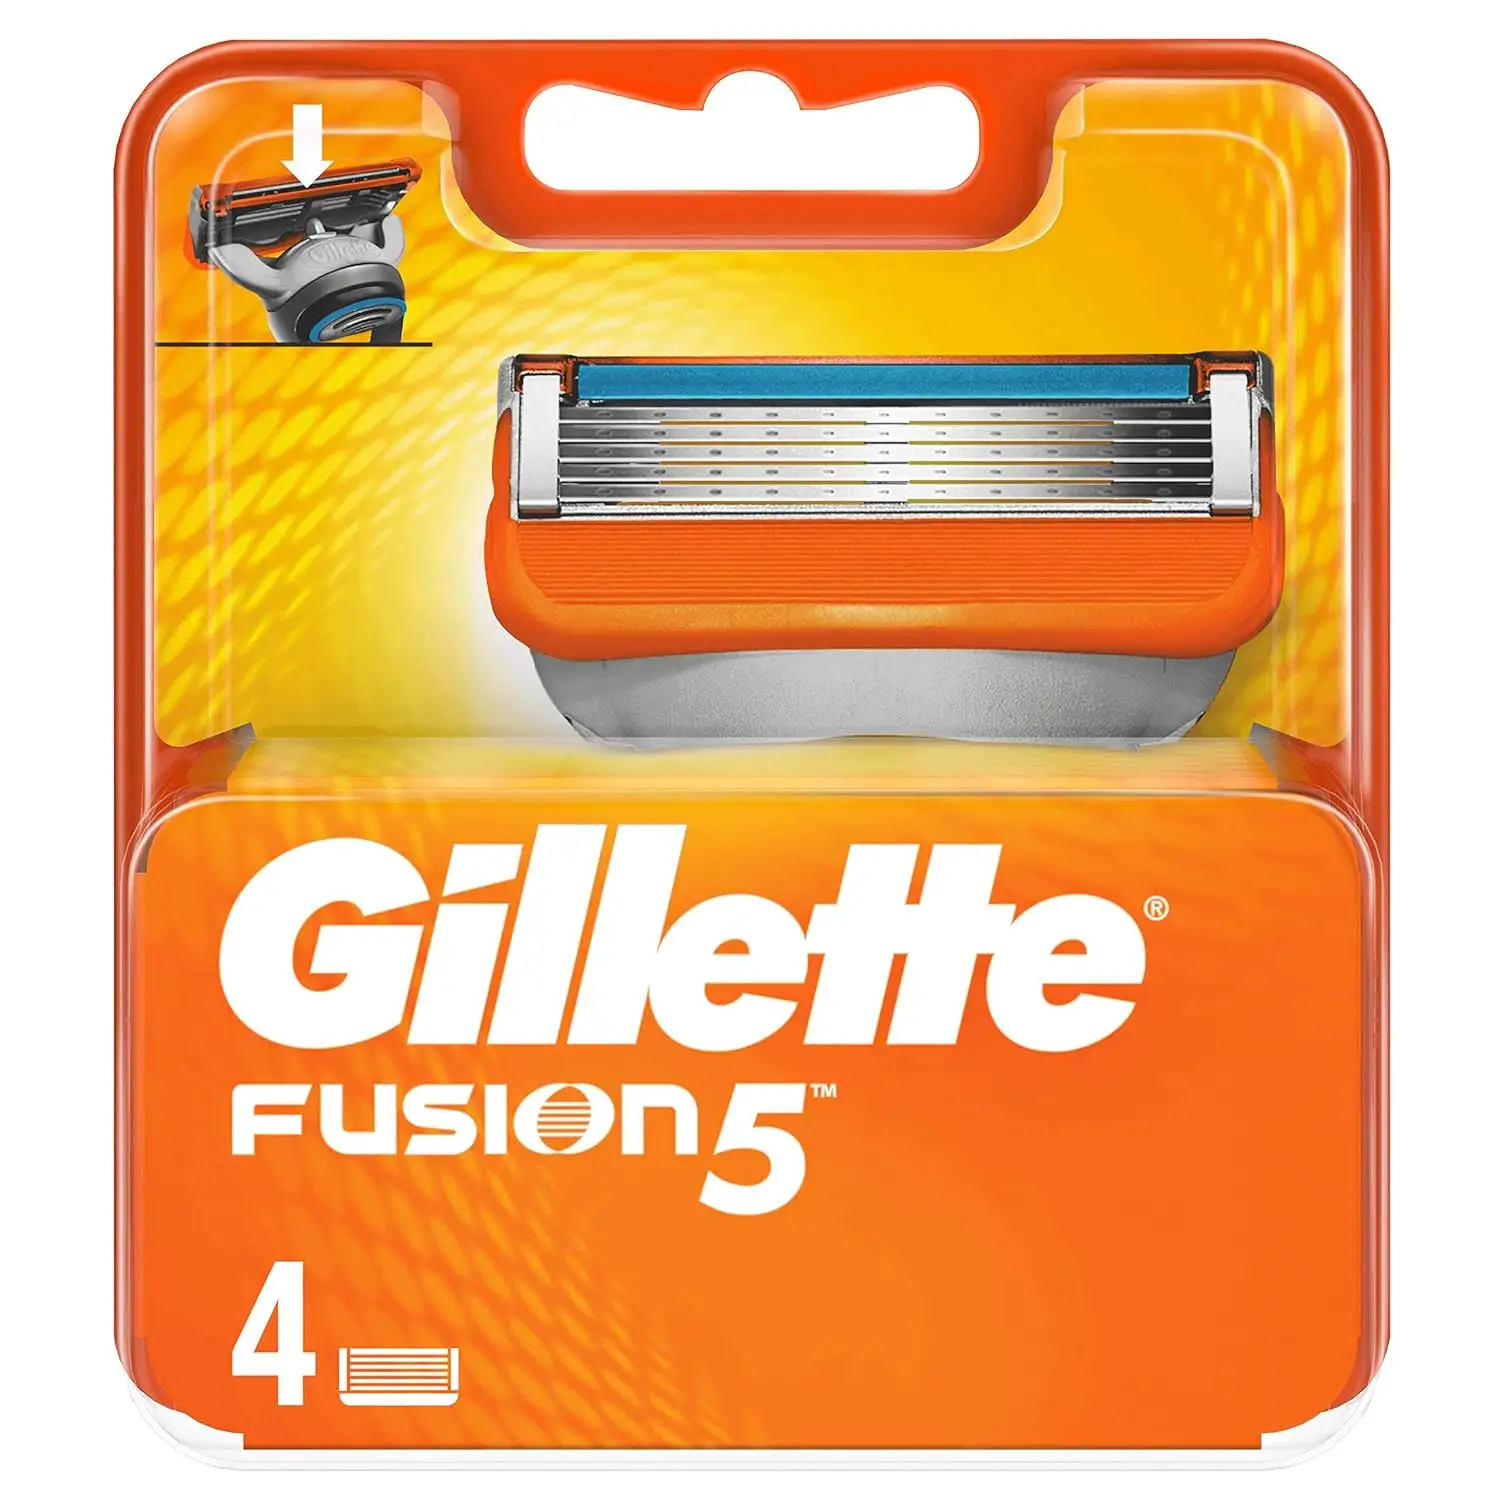 Gillette Fusion5 rasoio per gli uomini, impugnatura + 2 ricariche lama di rasoio, Gillette Fusion 5 lame per gli uomini sostituzione prezzi all'ingrosso